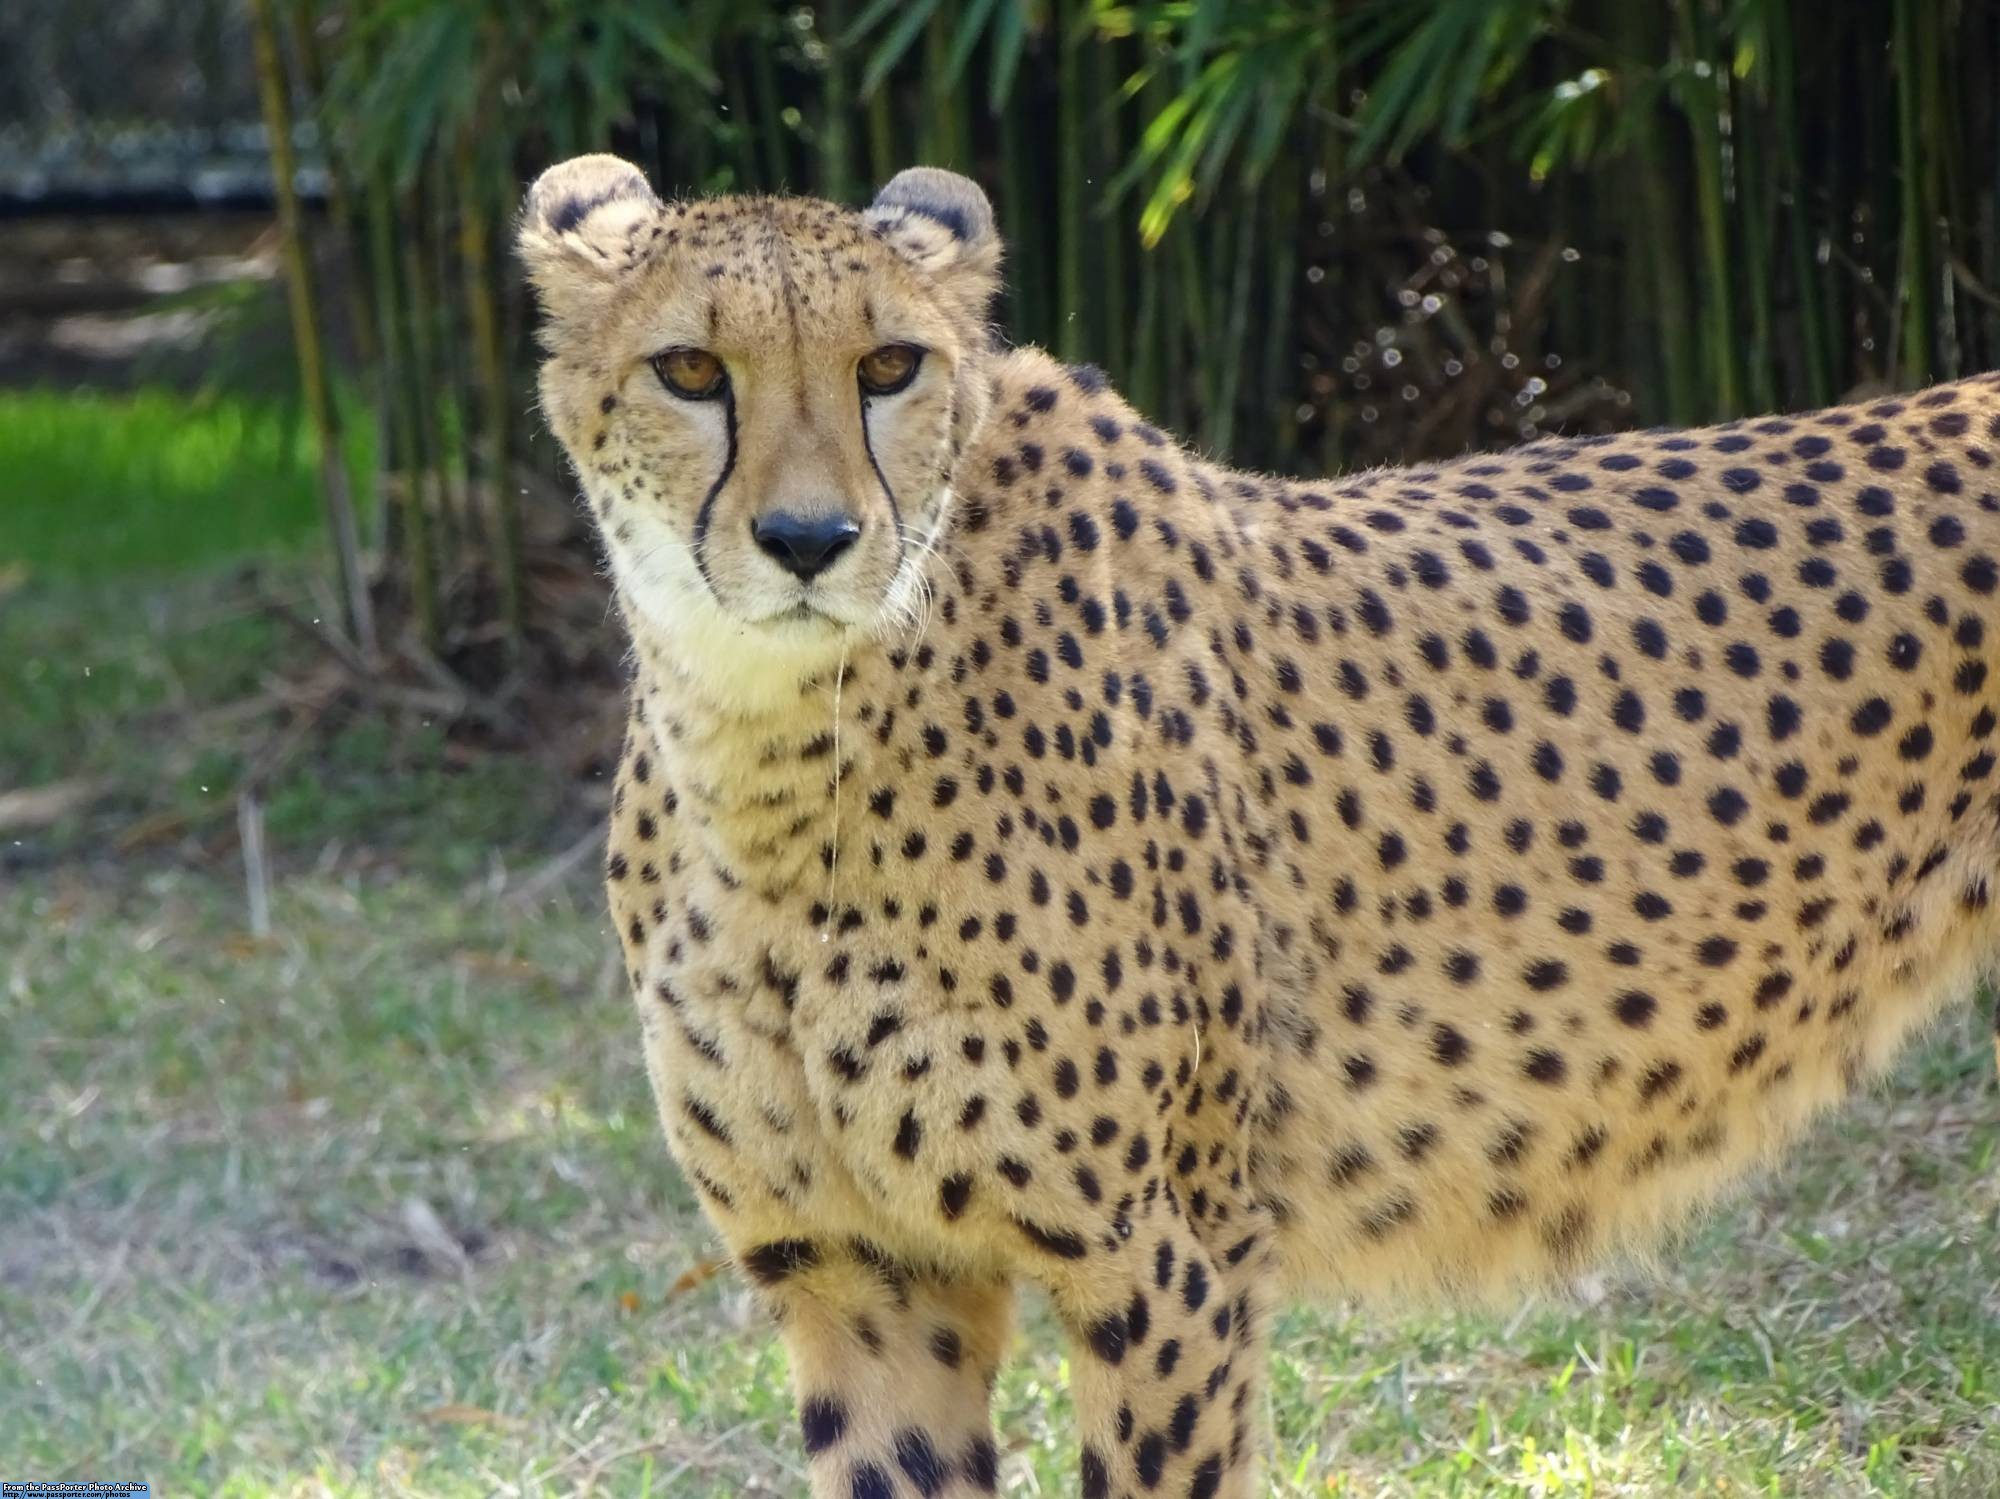 Busch Gardens - cheetah enclosure